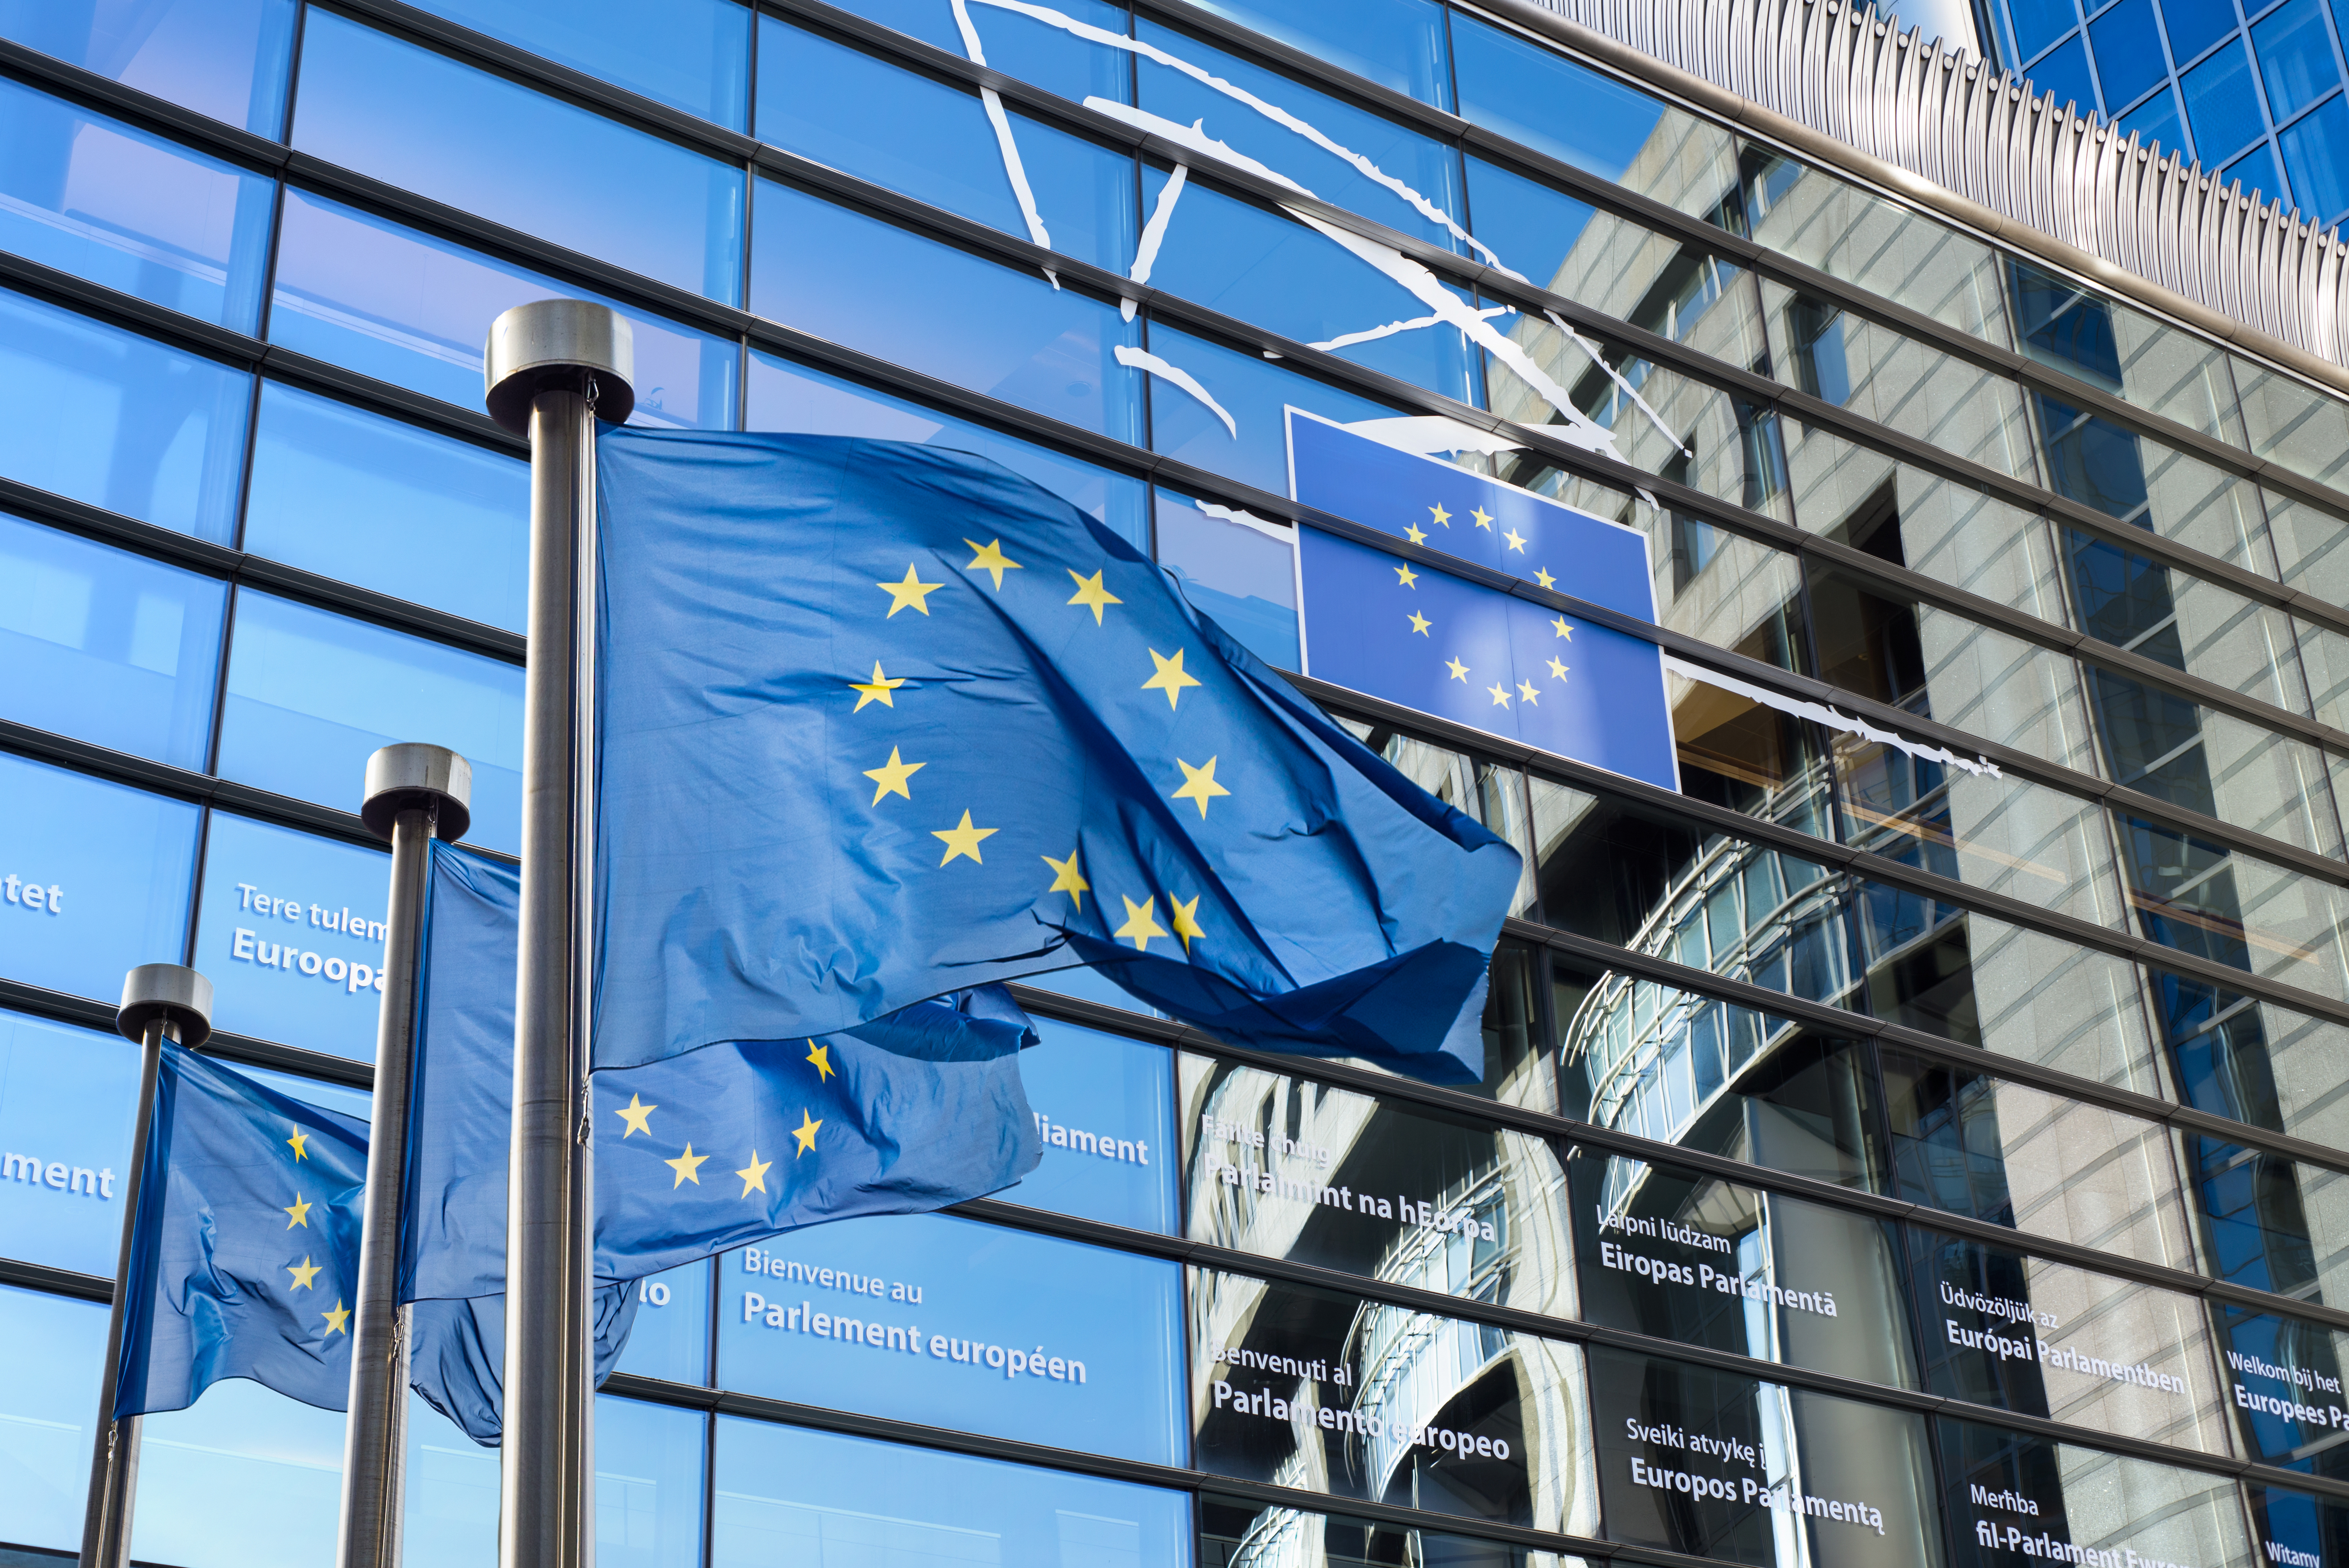 Parecer 01/2022 (nos termos do artigo 287º, nº 4, do TFUE) sobre a proposta da Comissão de um regulamento relativo ao estatuto e ao financiamento dos partidos políticos europeus e das fundações políticas europeias